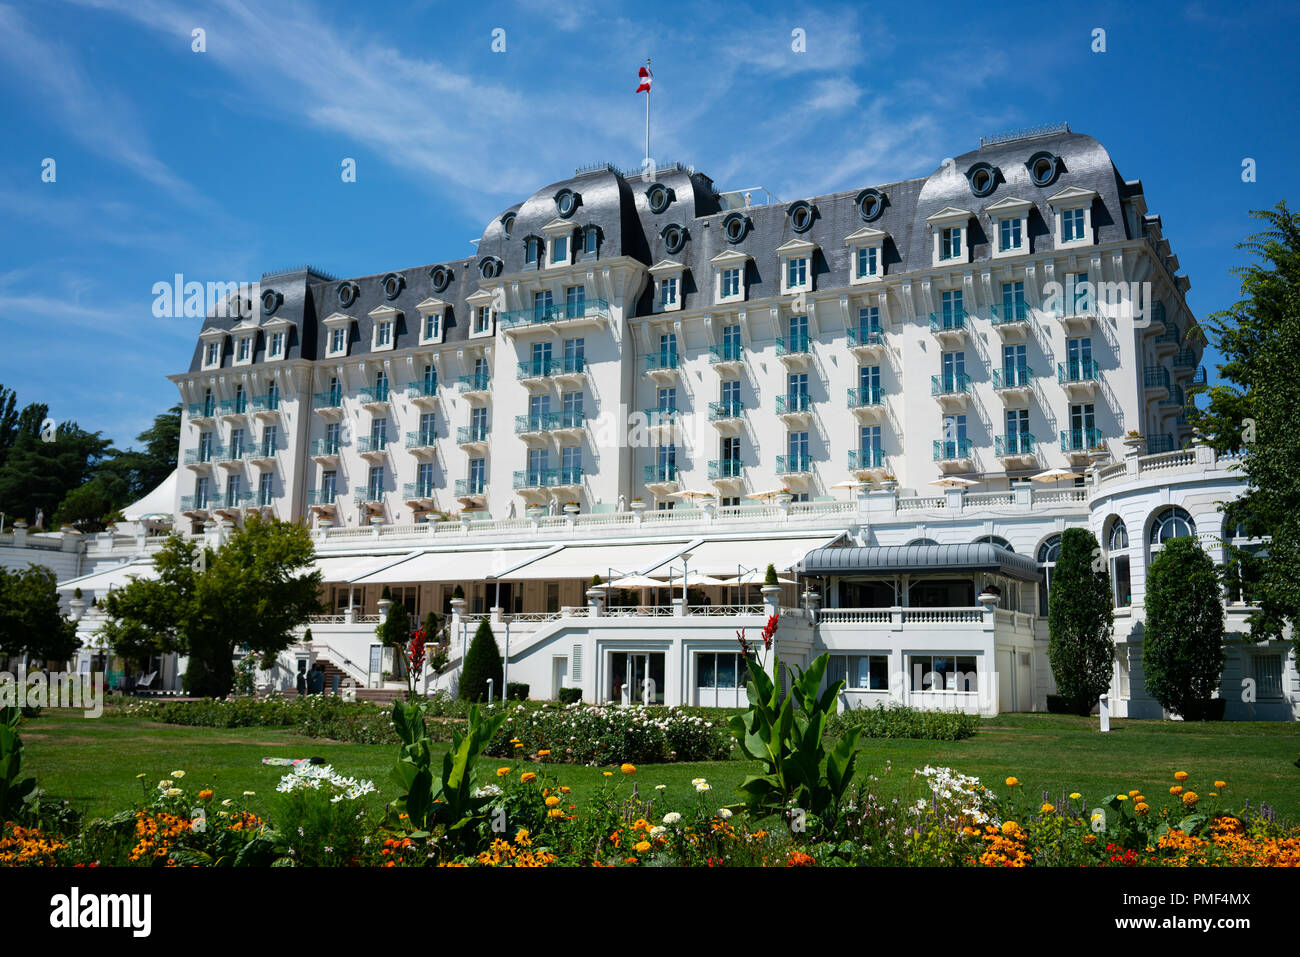 Il 7 agosto 2018, Annecy Francia : Imperial palace hotel vista in Annecy Francia con architettura Belle Epoque Foto Stock